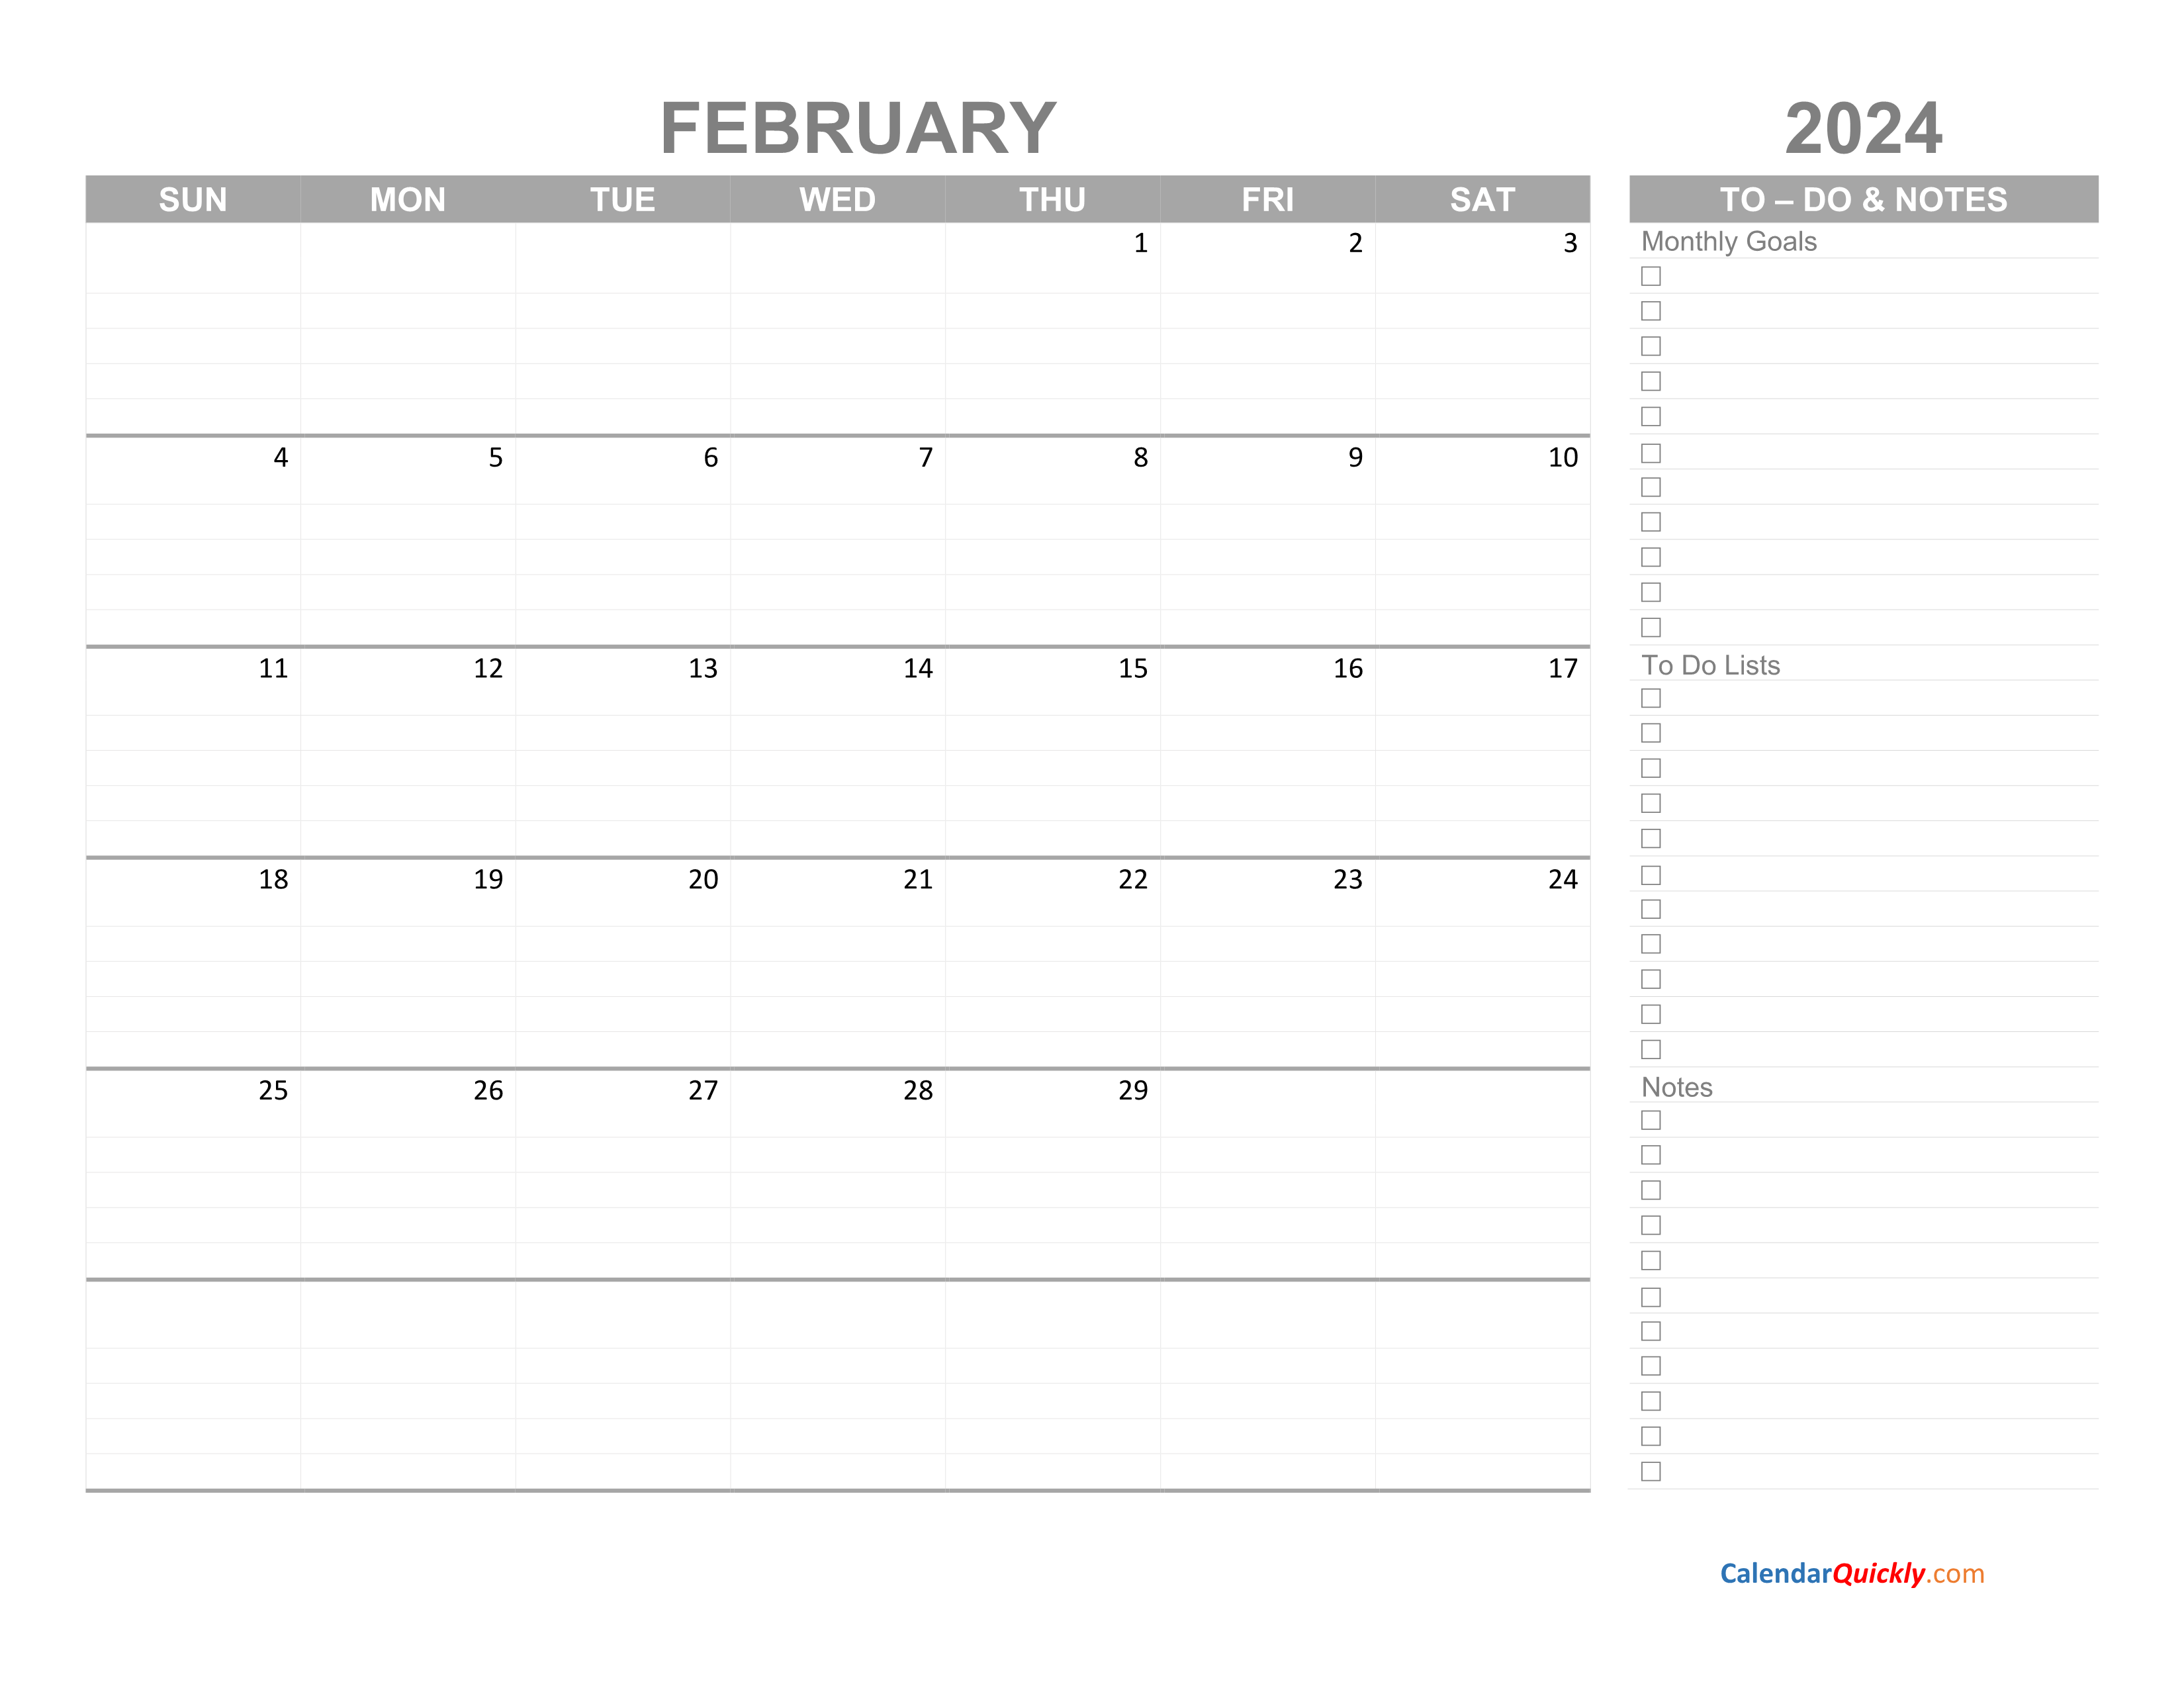 February 2024 Calendar with To Do List Calendar Quickly